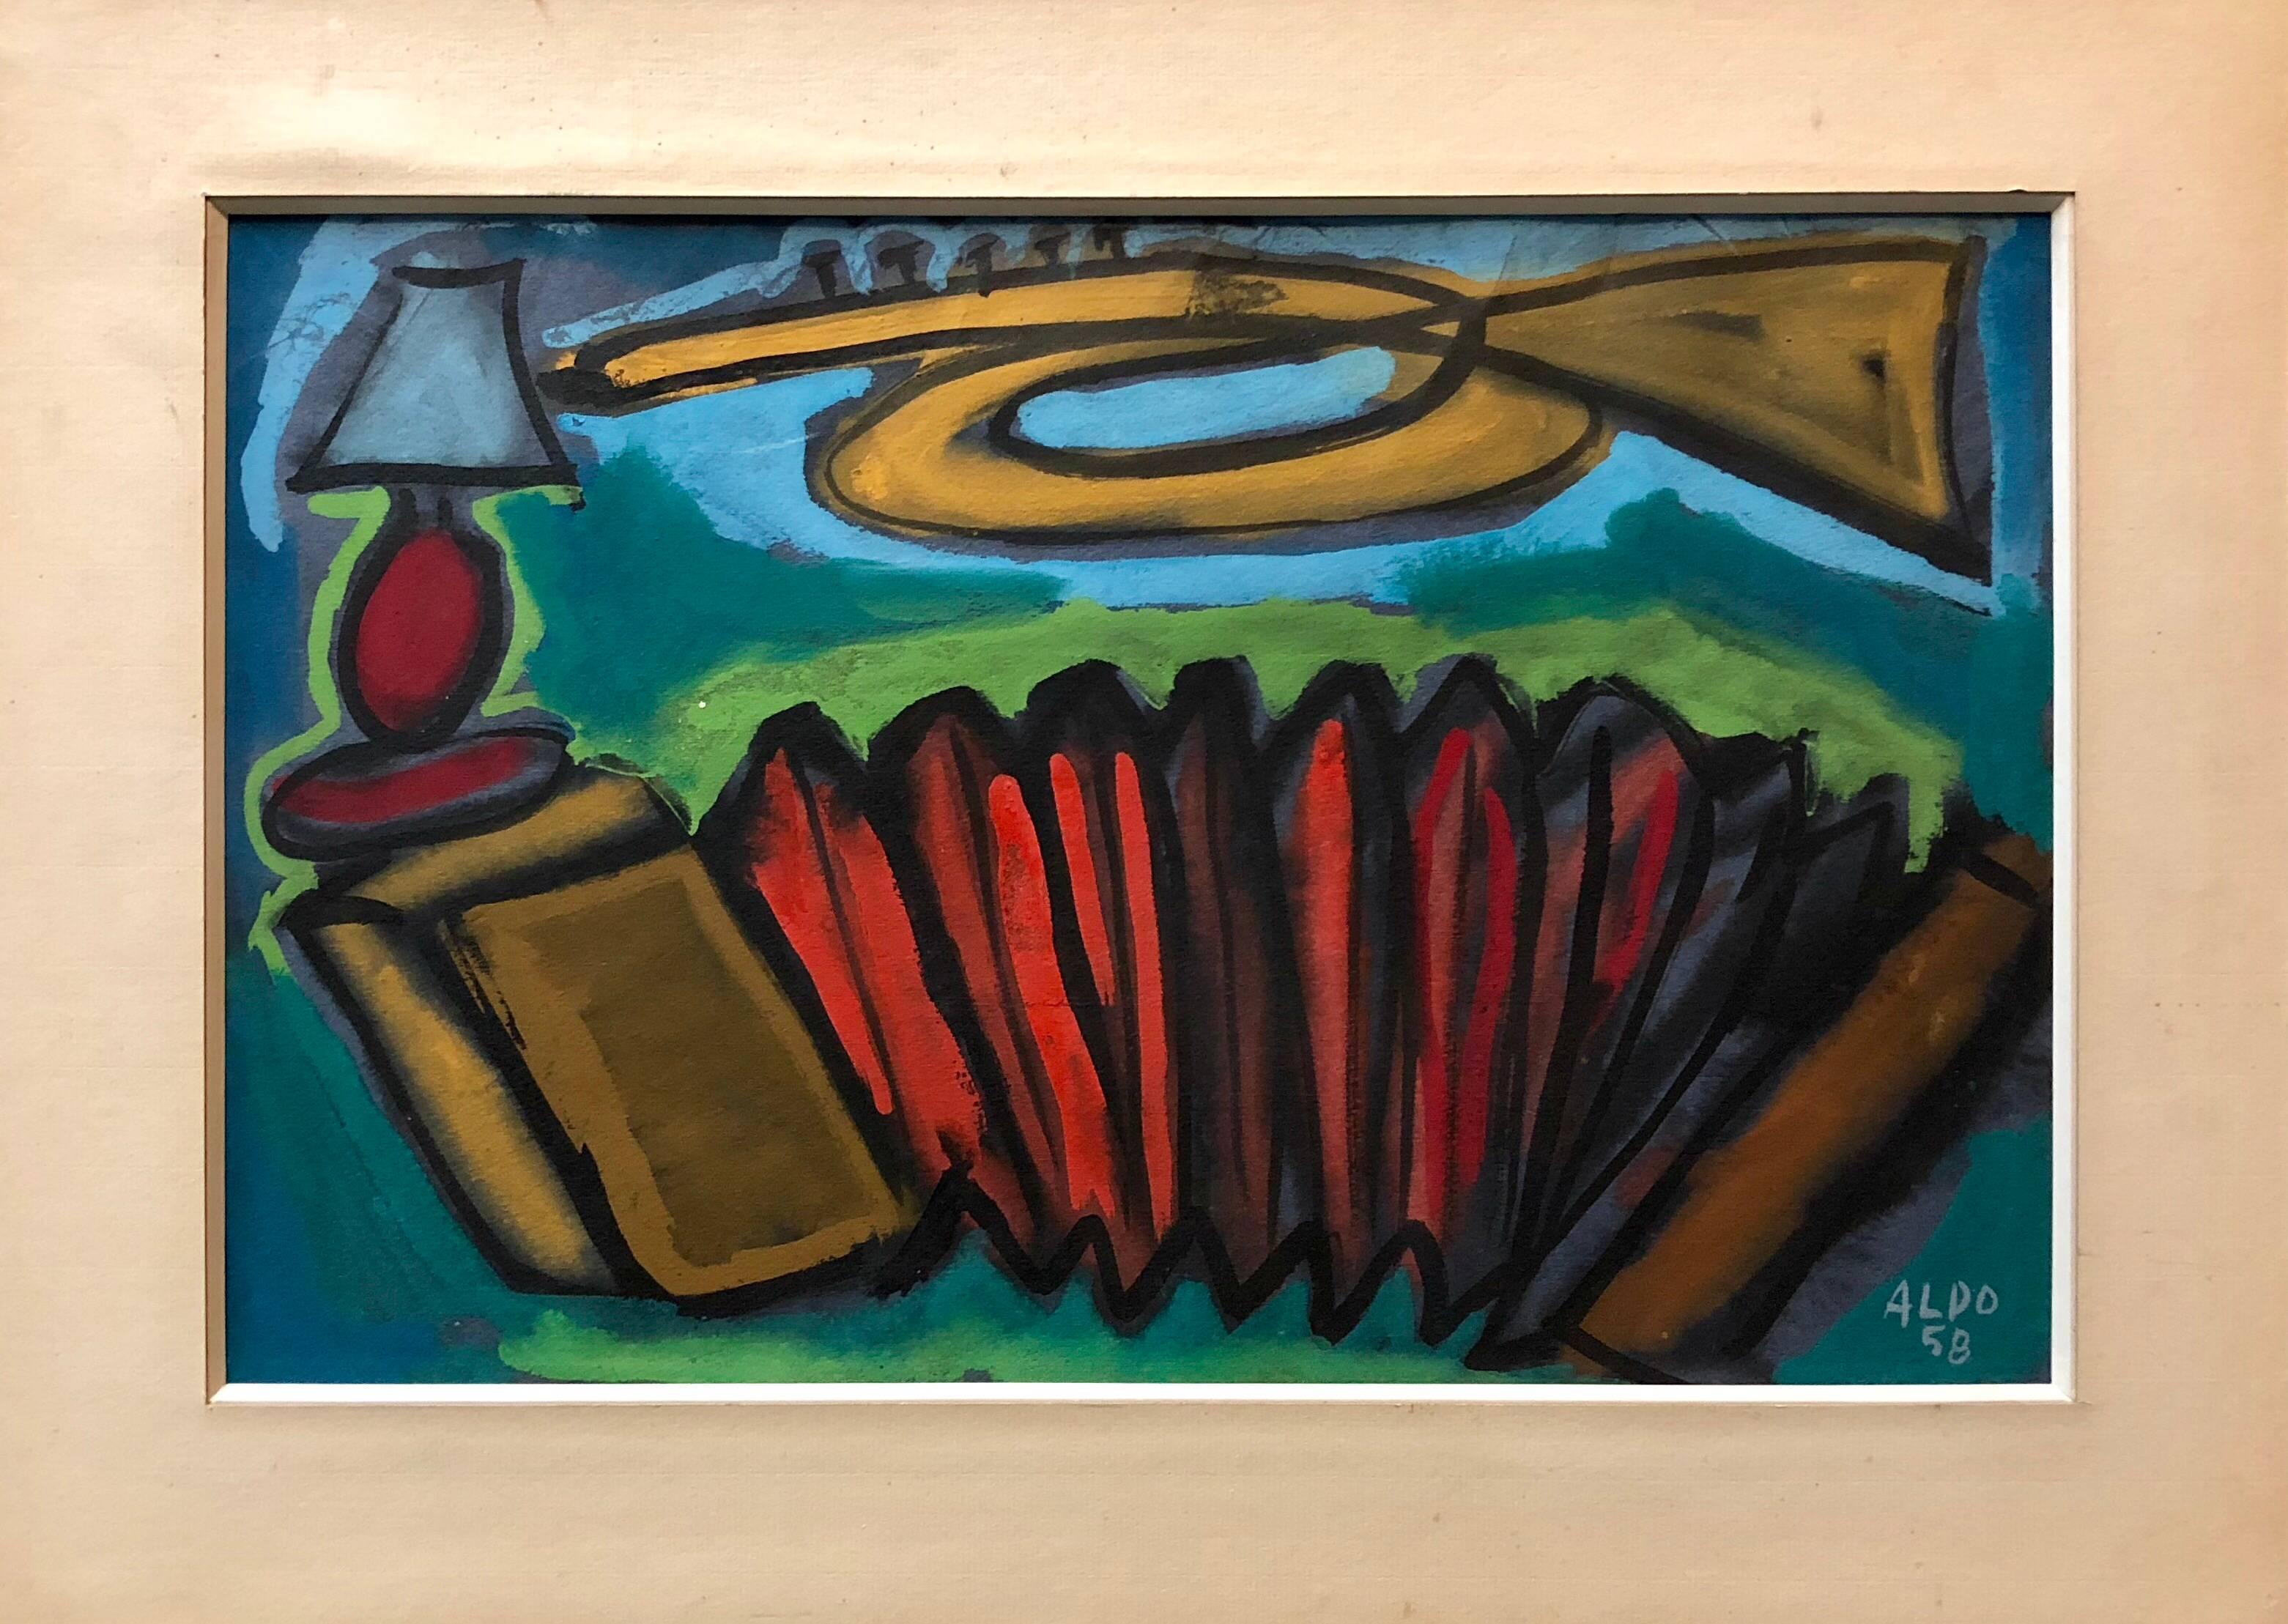 Abstraktes, farbenfrohes, französisches modernistisches Gemälde, 1958, signiert Aldo  – Painting von Unknown